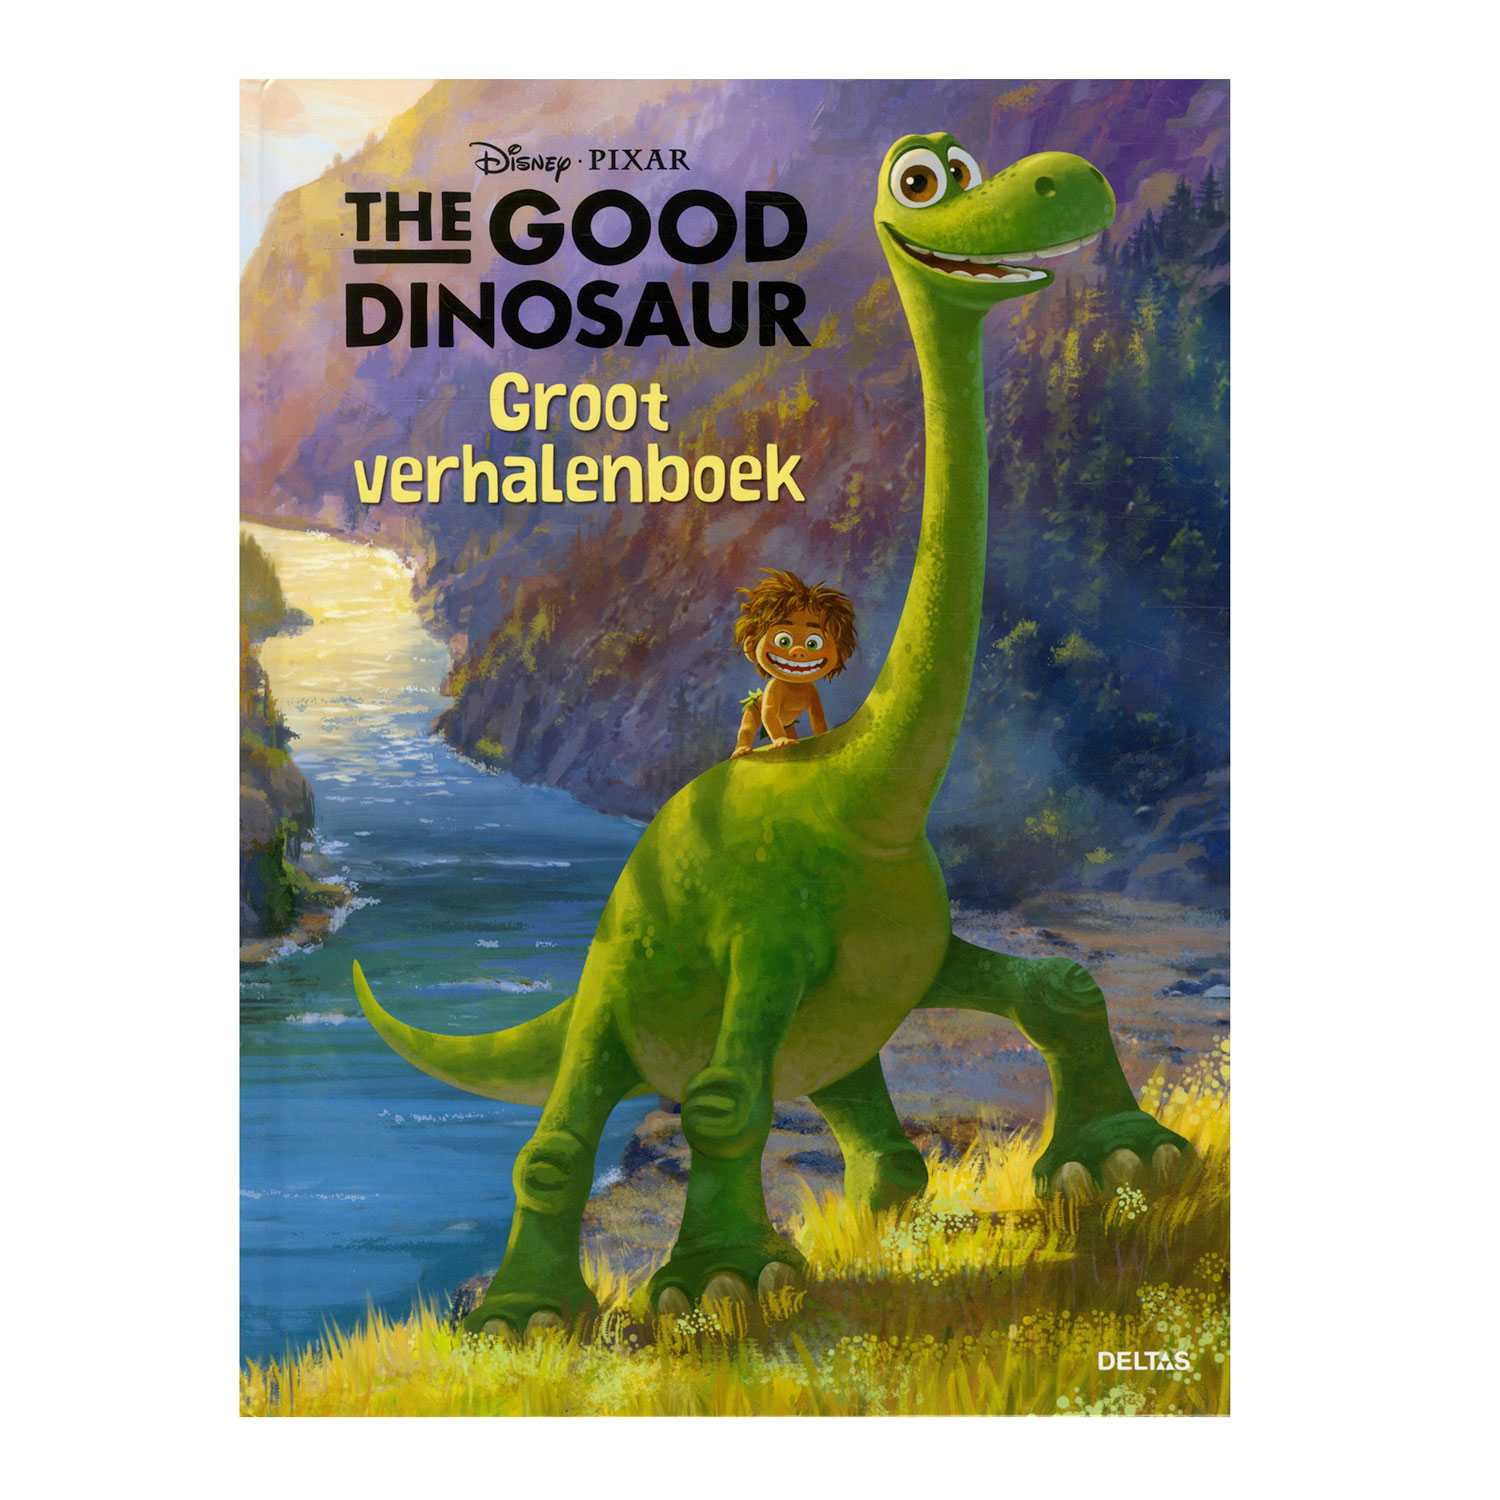 The Good Dinosaur Groot Verhalenboek